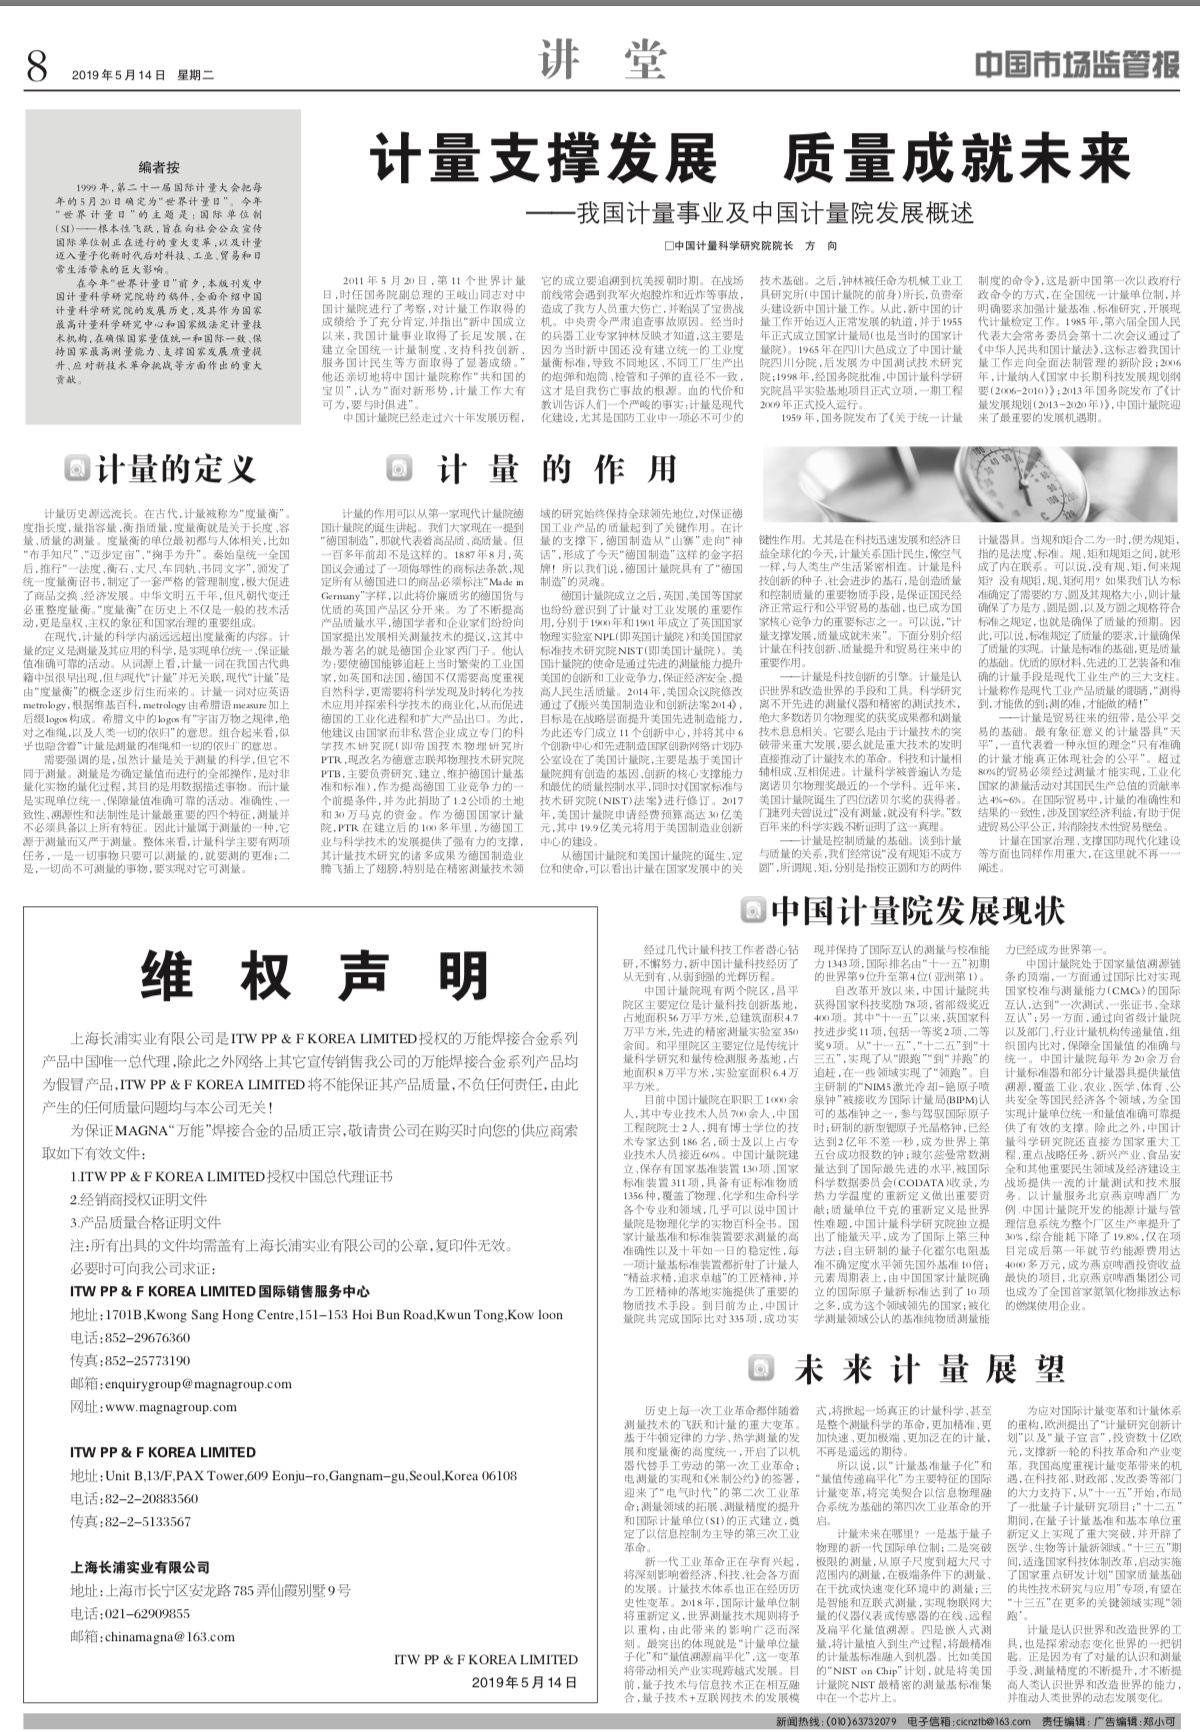 维权声明-2019年5月14日中国市场监管报刊登